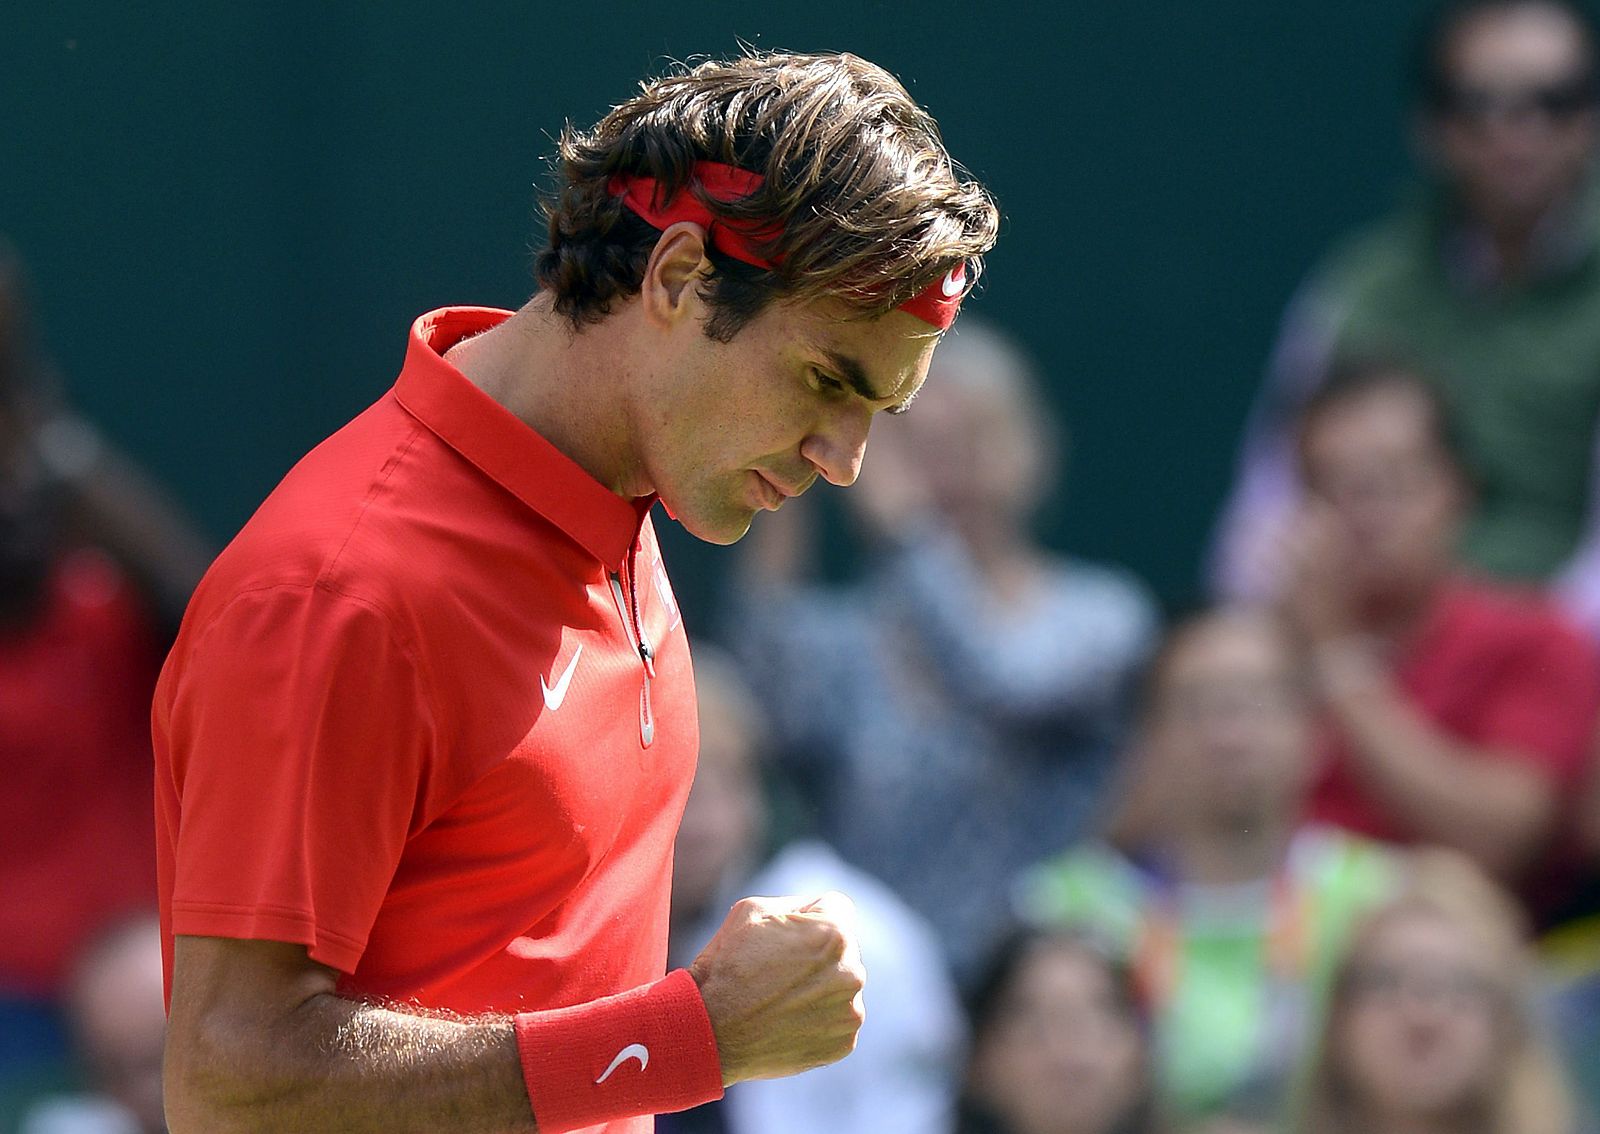 El tenista suizo Roger Federer celebra un punto ante el estadounidense John Isner